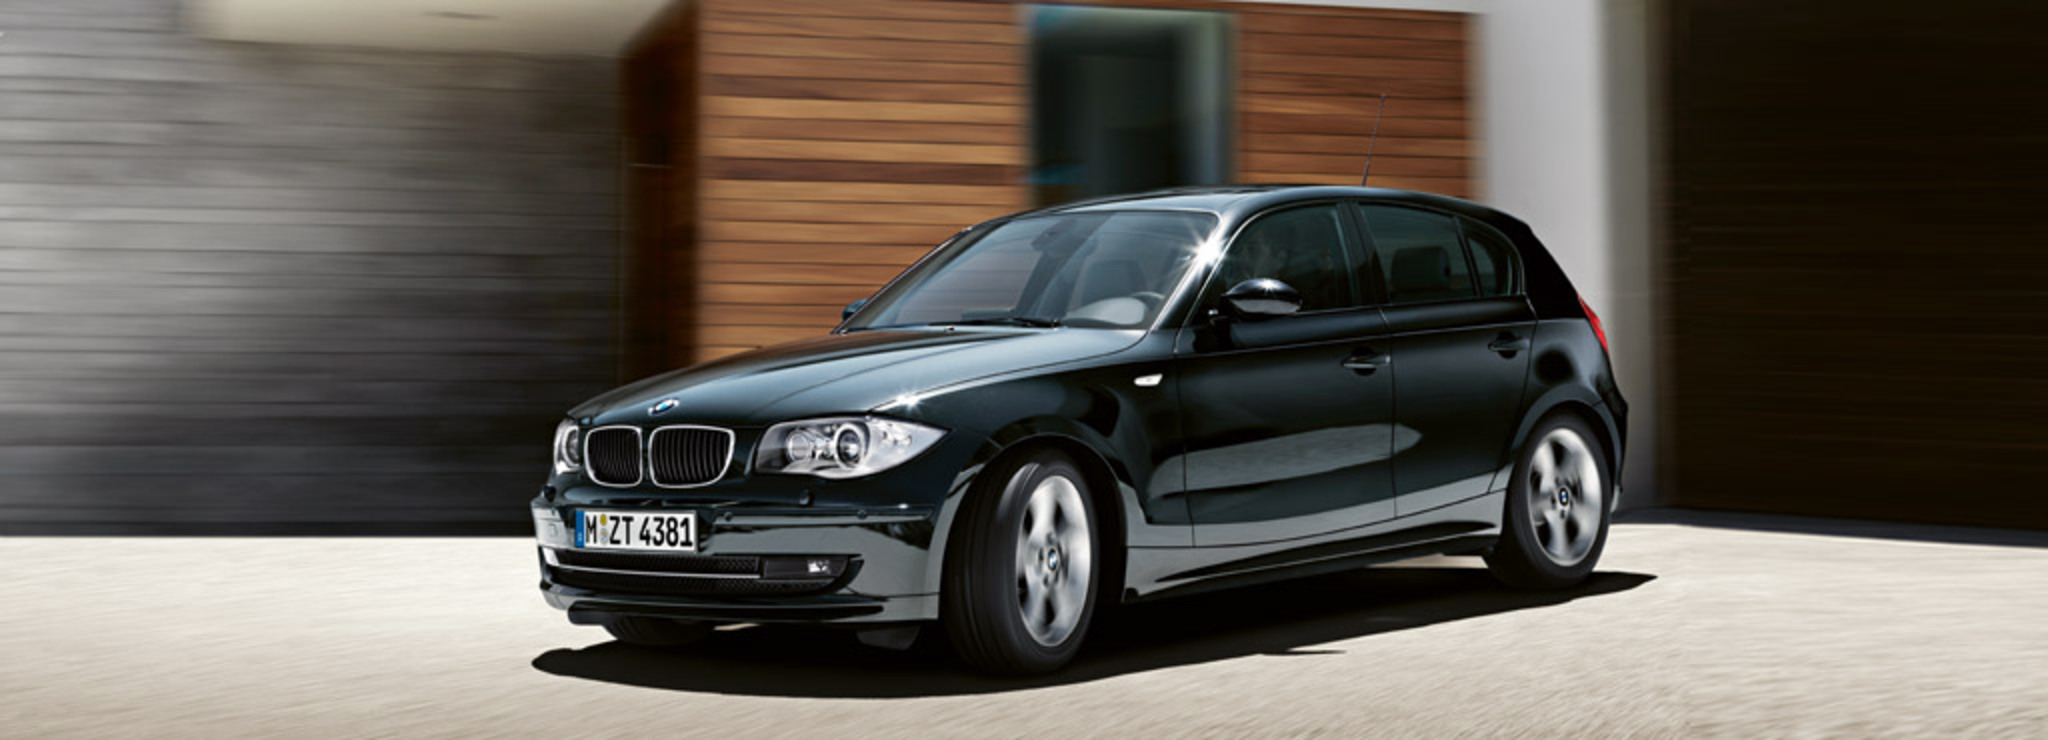 BMW 116d (5-door). 118 g/km CO2. Lightweight construction, energy management